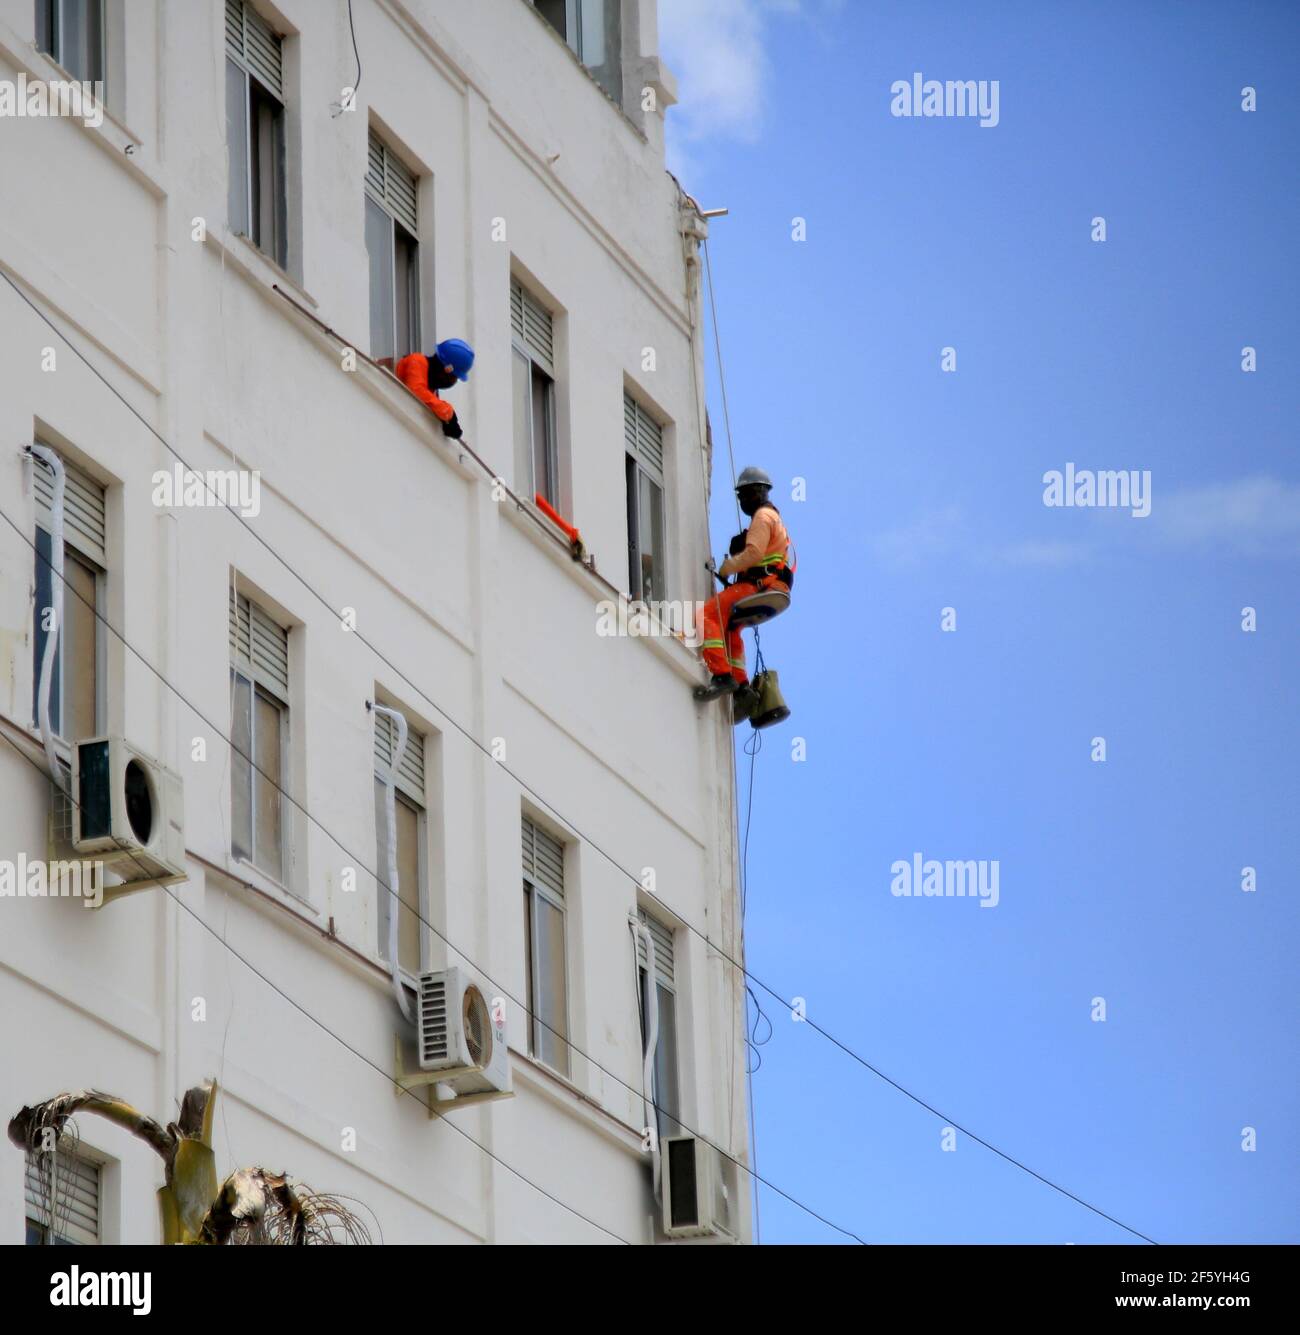 salvador, bahia, brasile - 8 gennaio 2021: Il pittore di muro è visto appeso ad una corda mentre dipinge un edificio nella città di Salvador. *** Capti locale Foto Stock